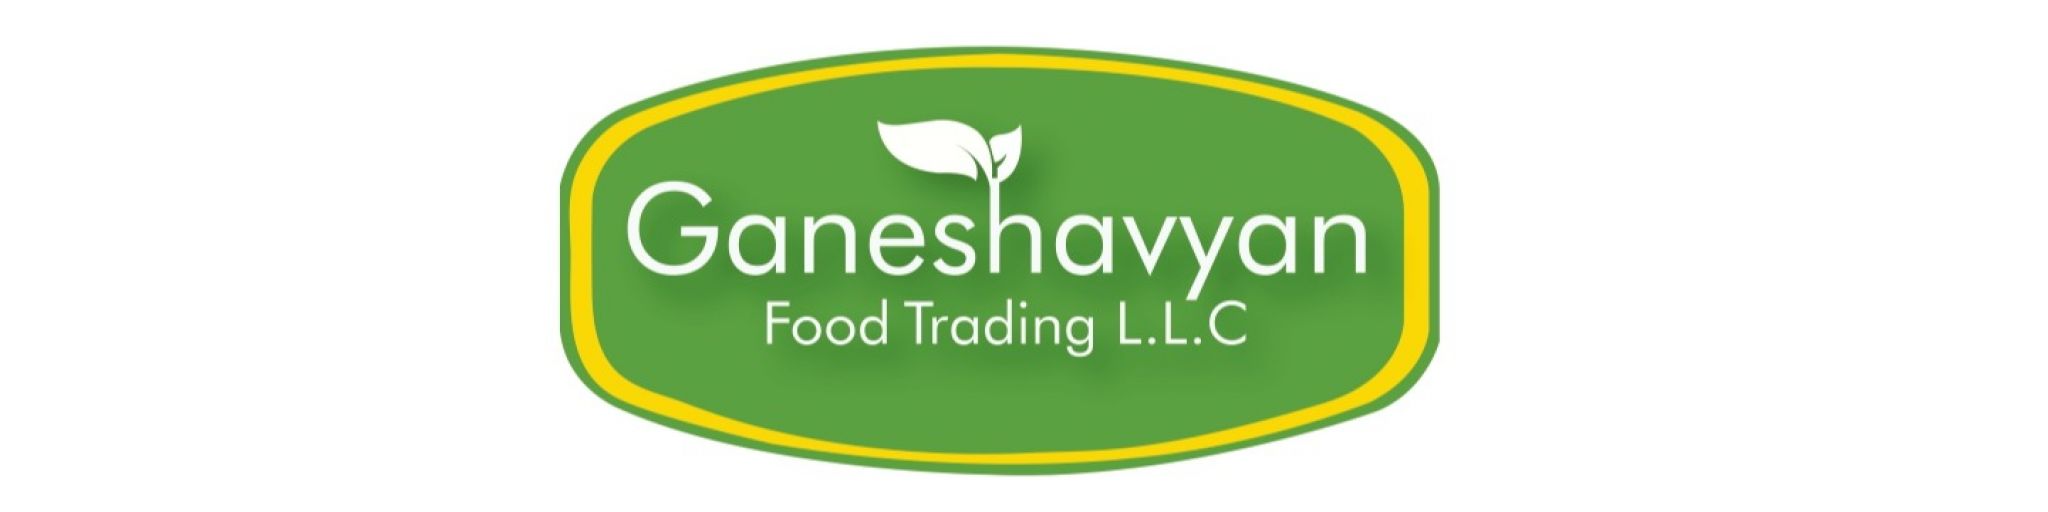 GANESHAVYAN FOOD TRADING LLC